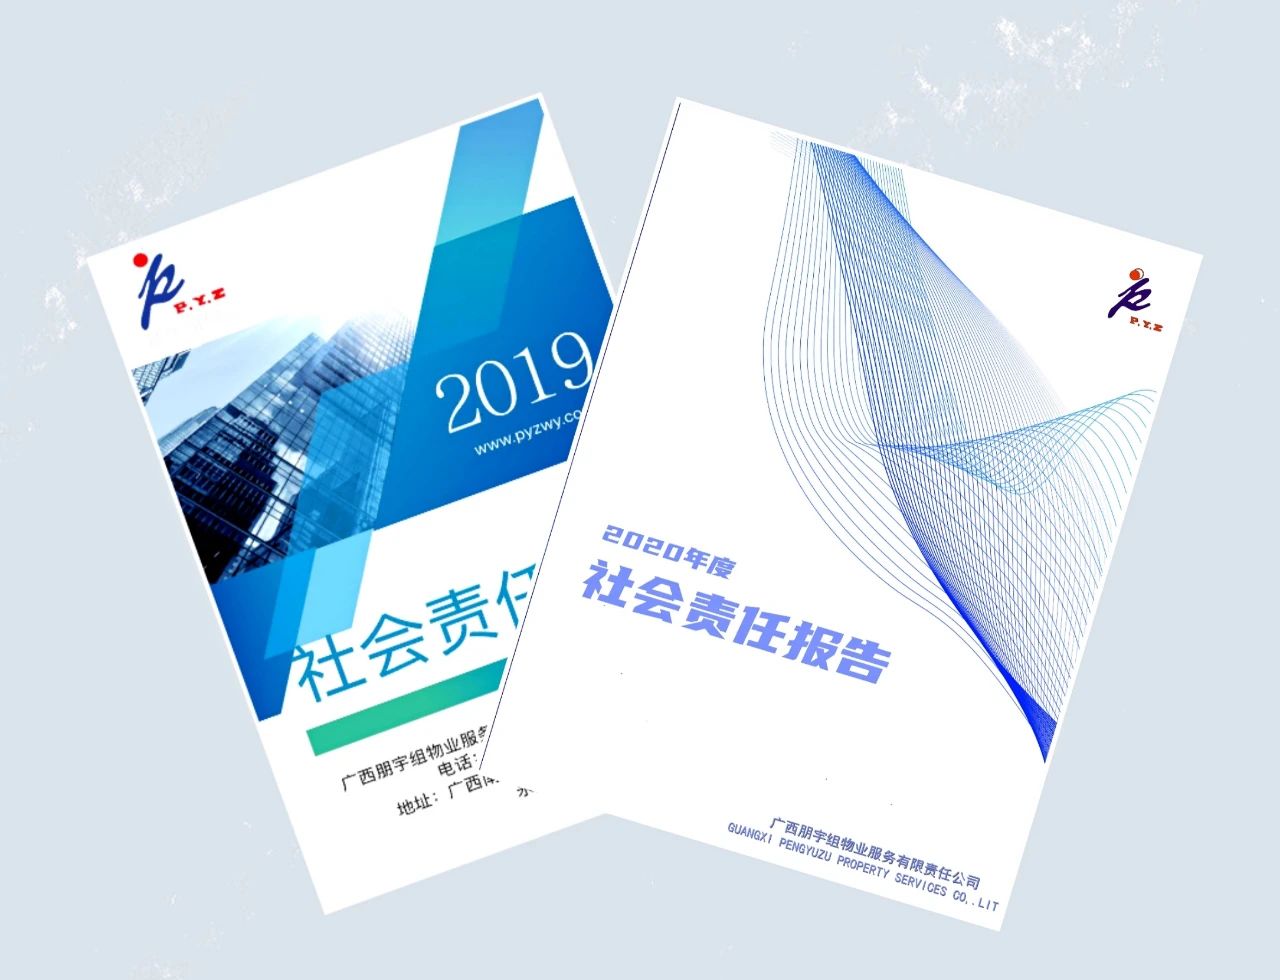 朋宇組物業發布2020年度社會責任報告